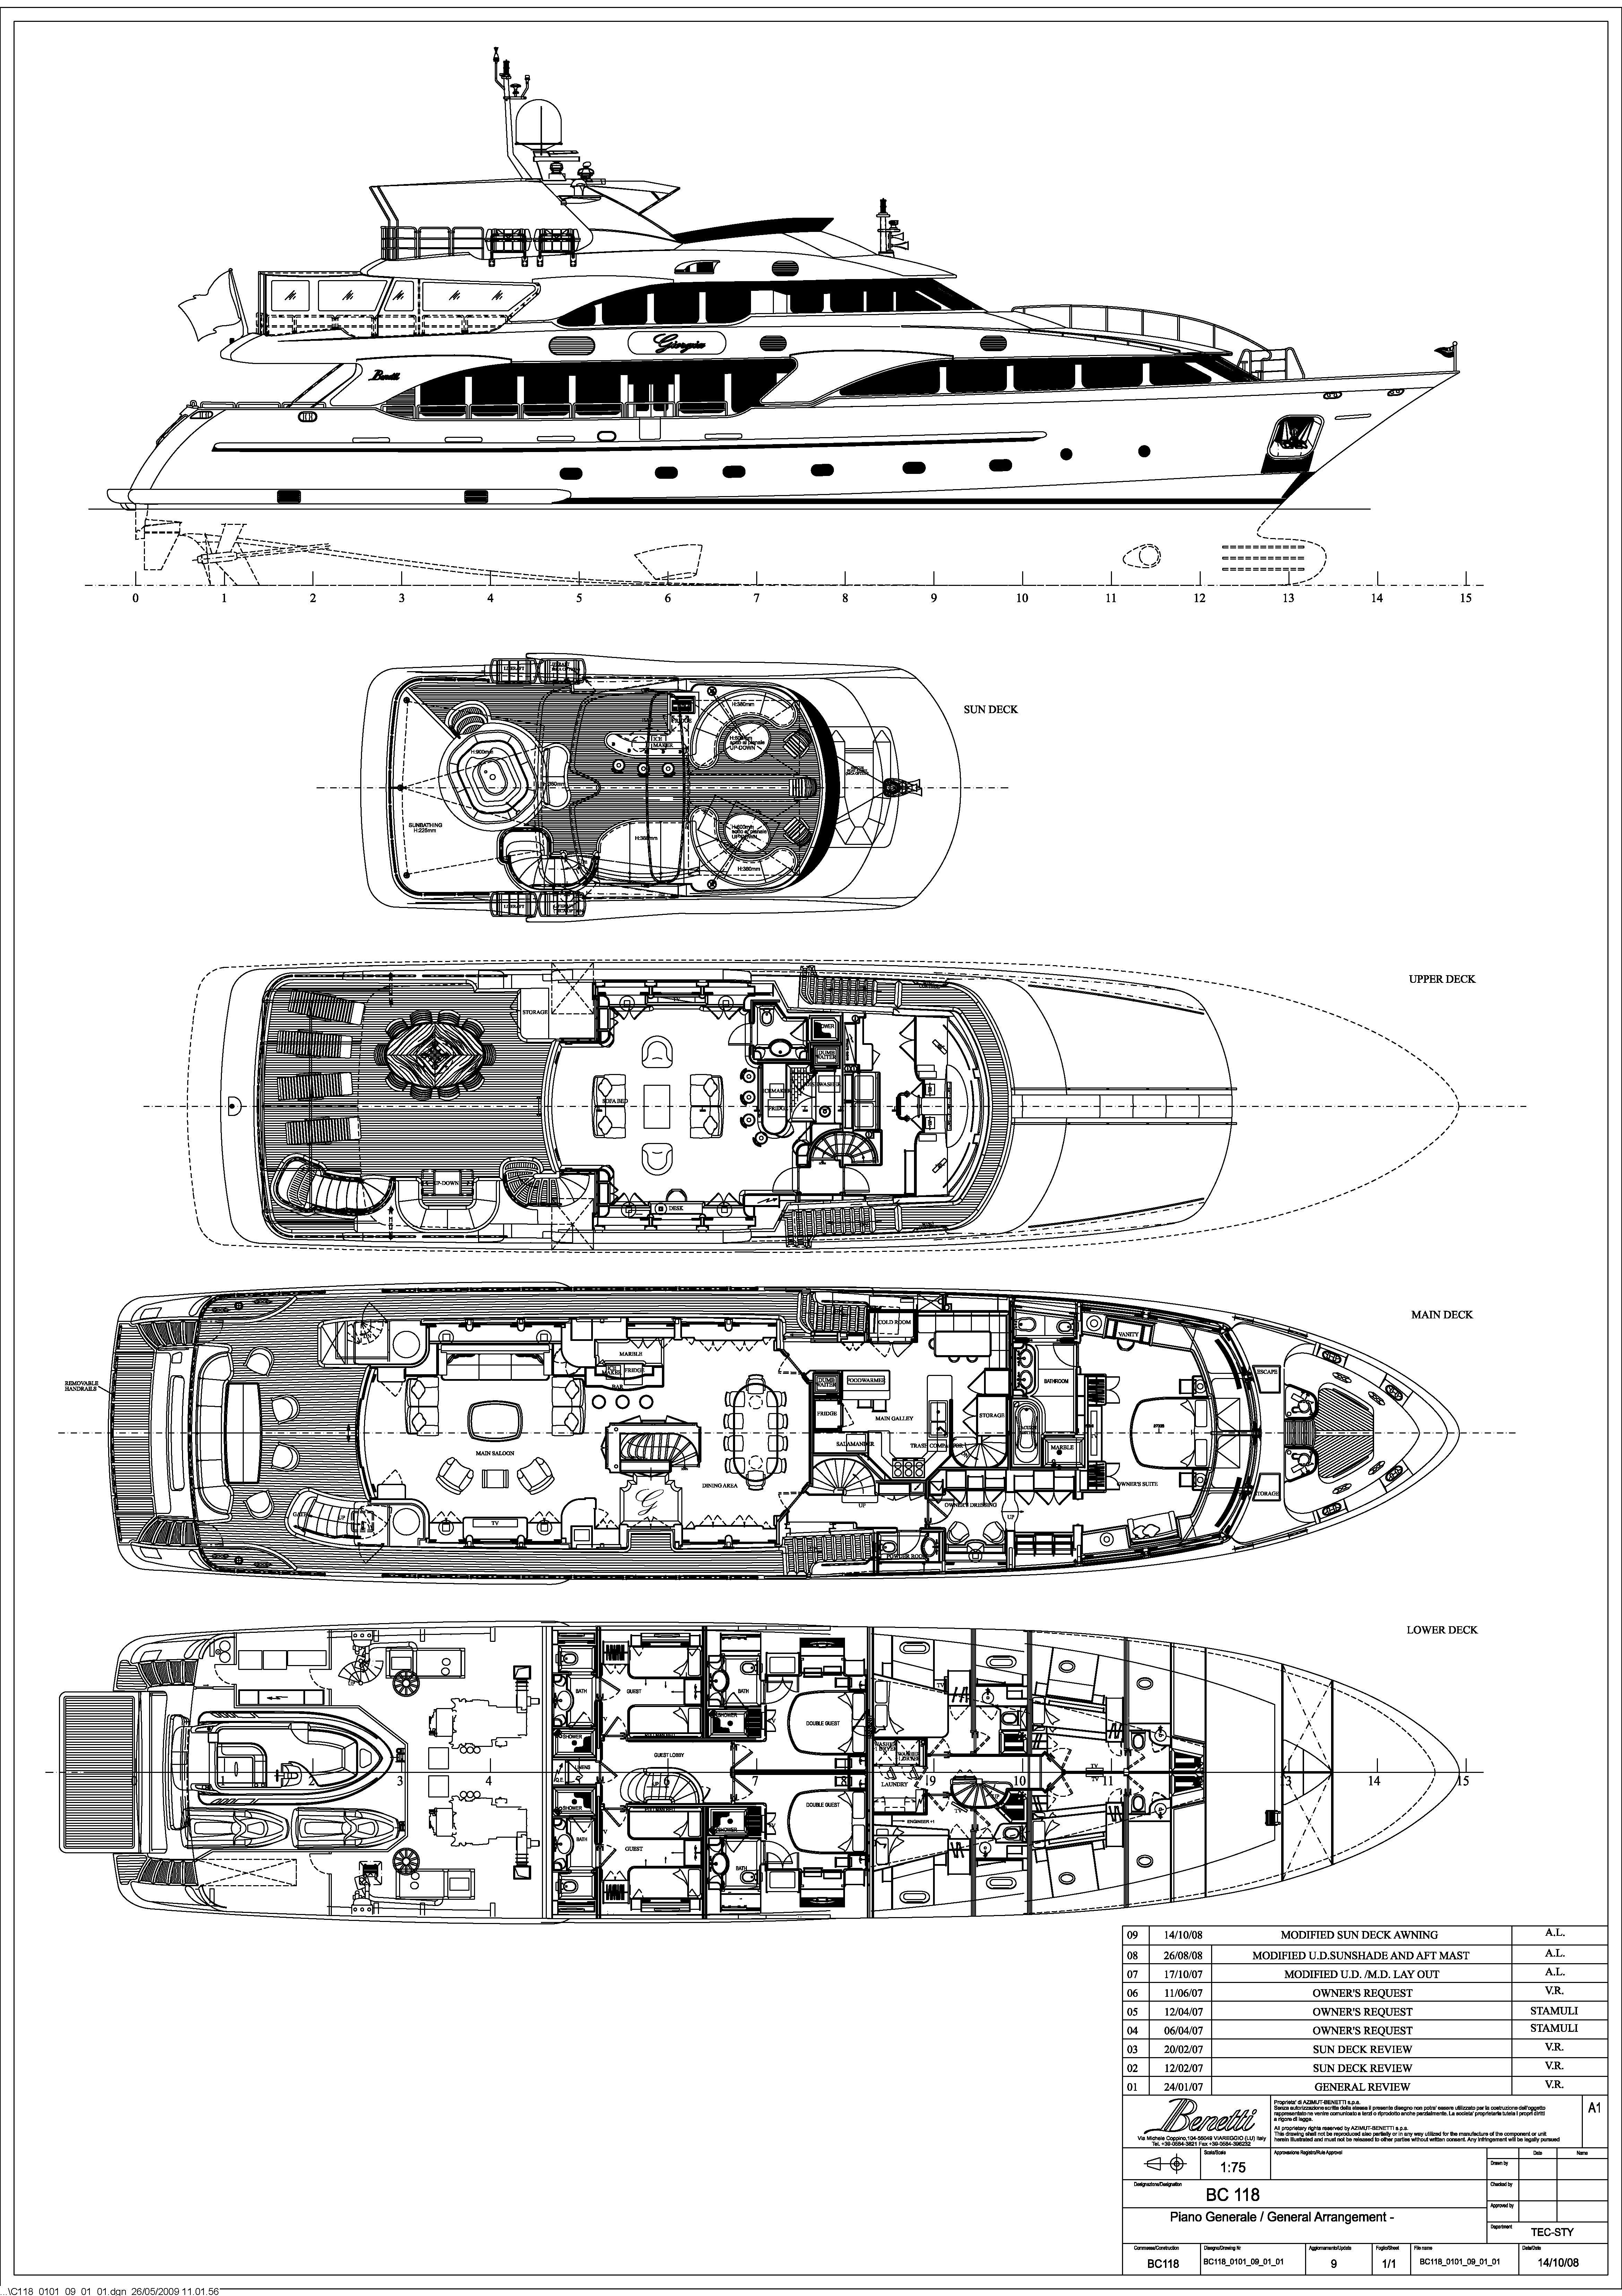 The 36m Yacht GIORGIA